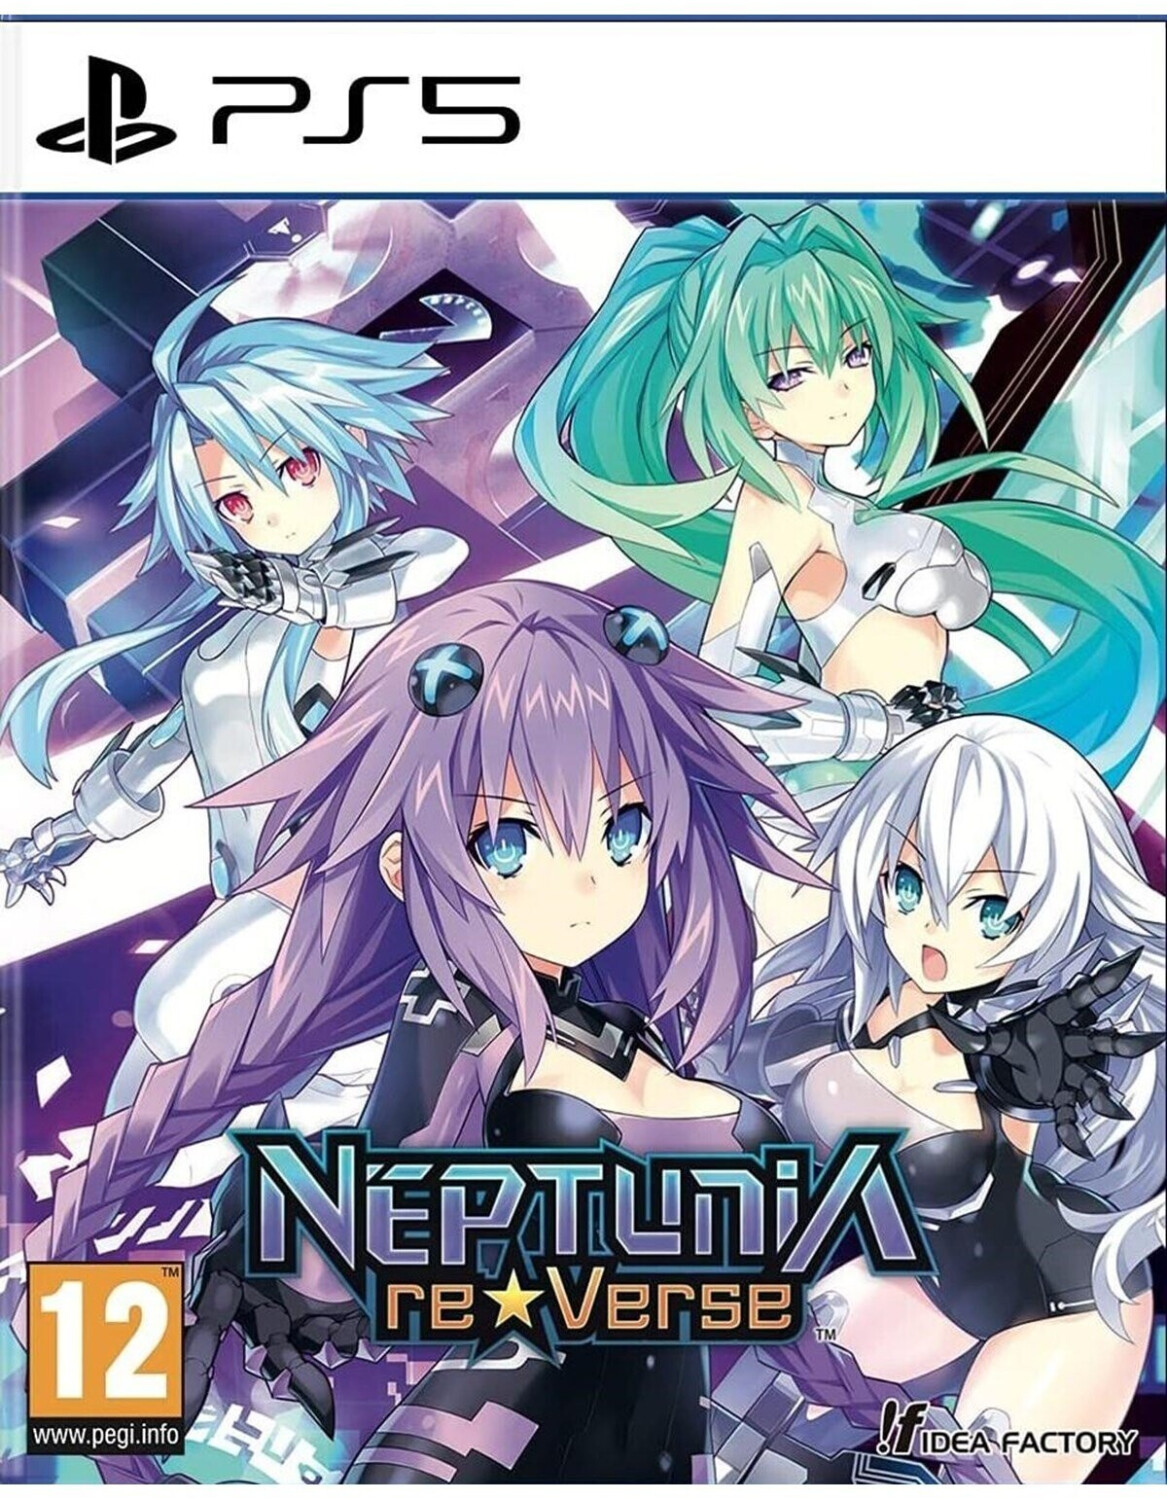 neptunia reverse 2